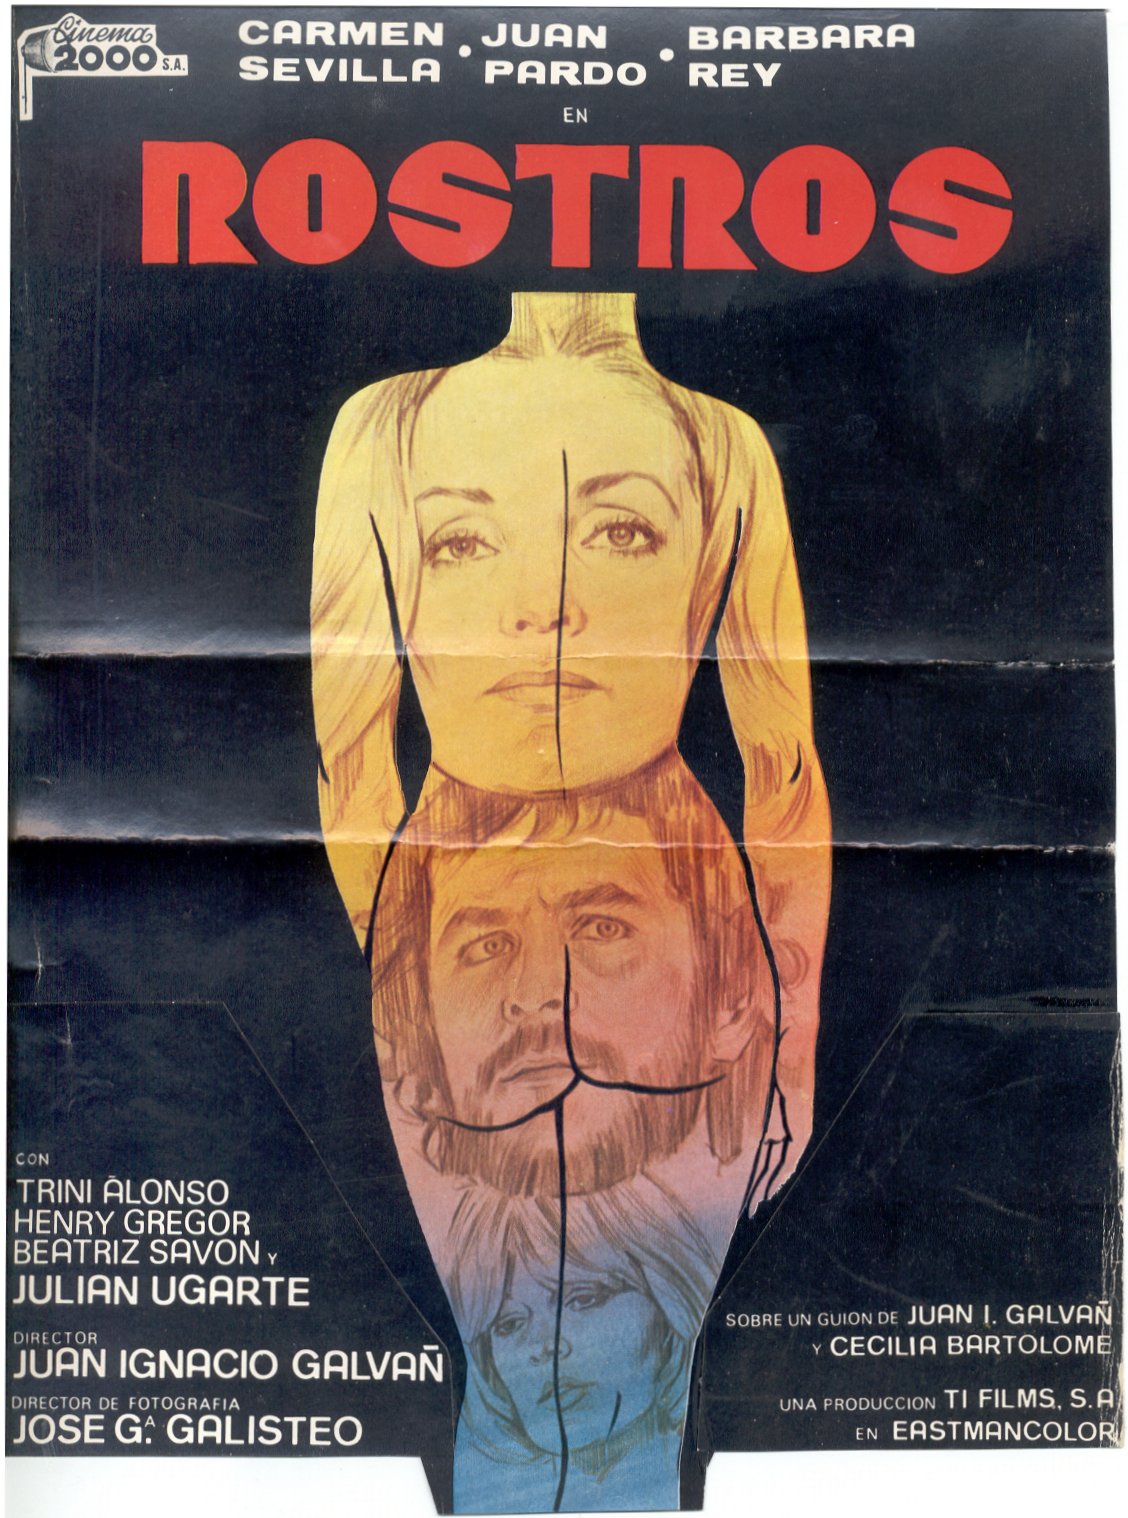 El cartel de "Rostros" aparece gracias a la amabilidad de Sonia Galvañ 